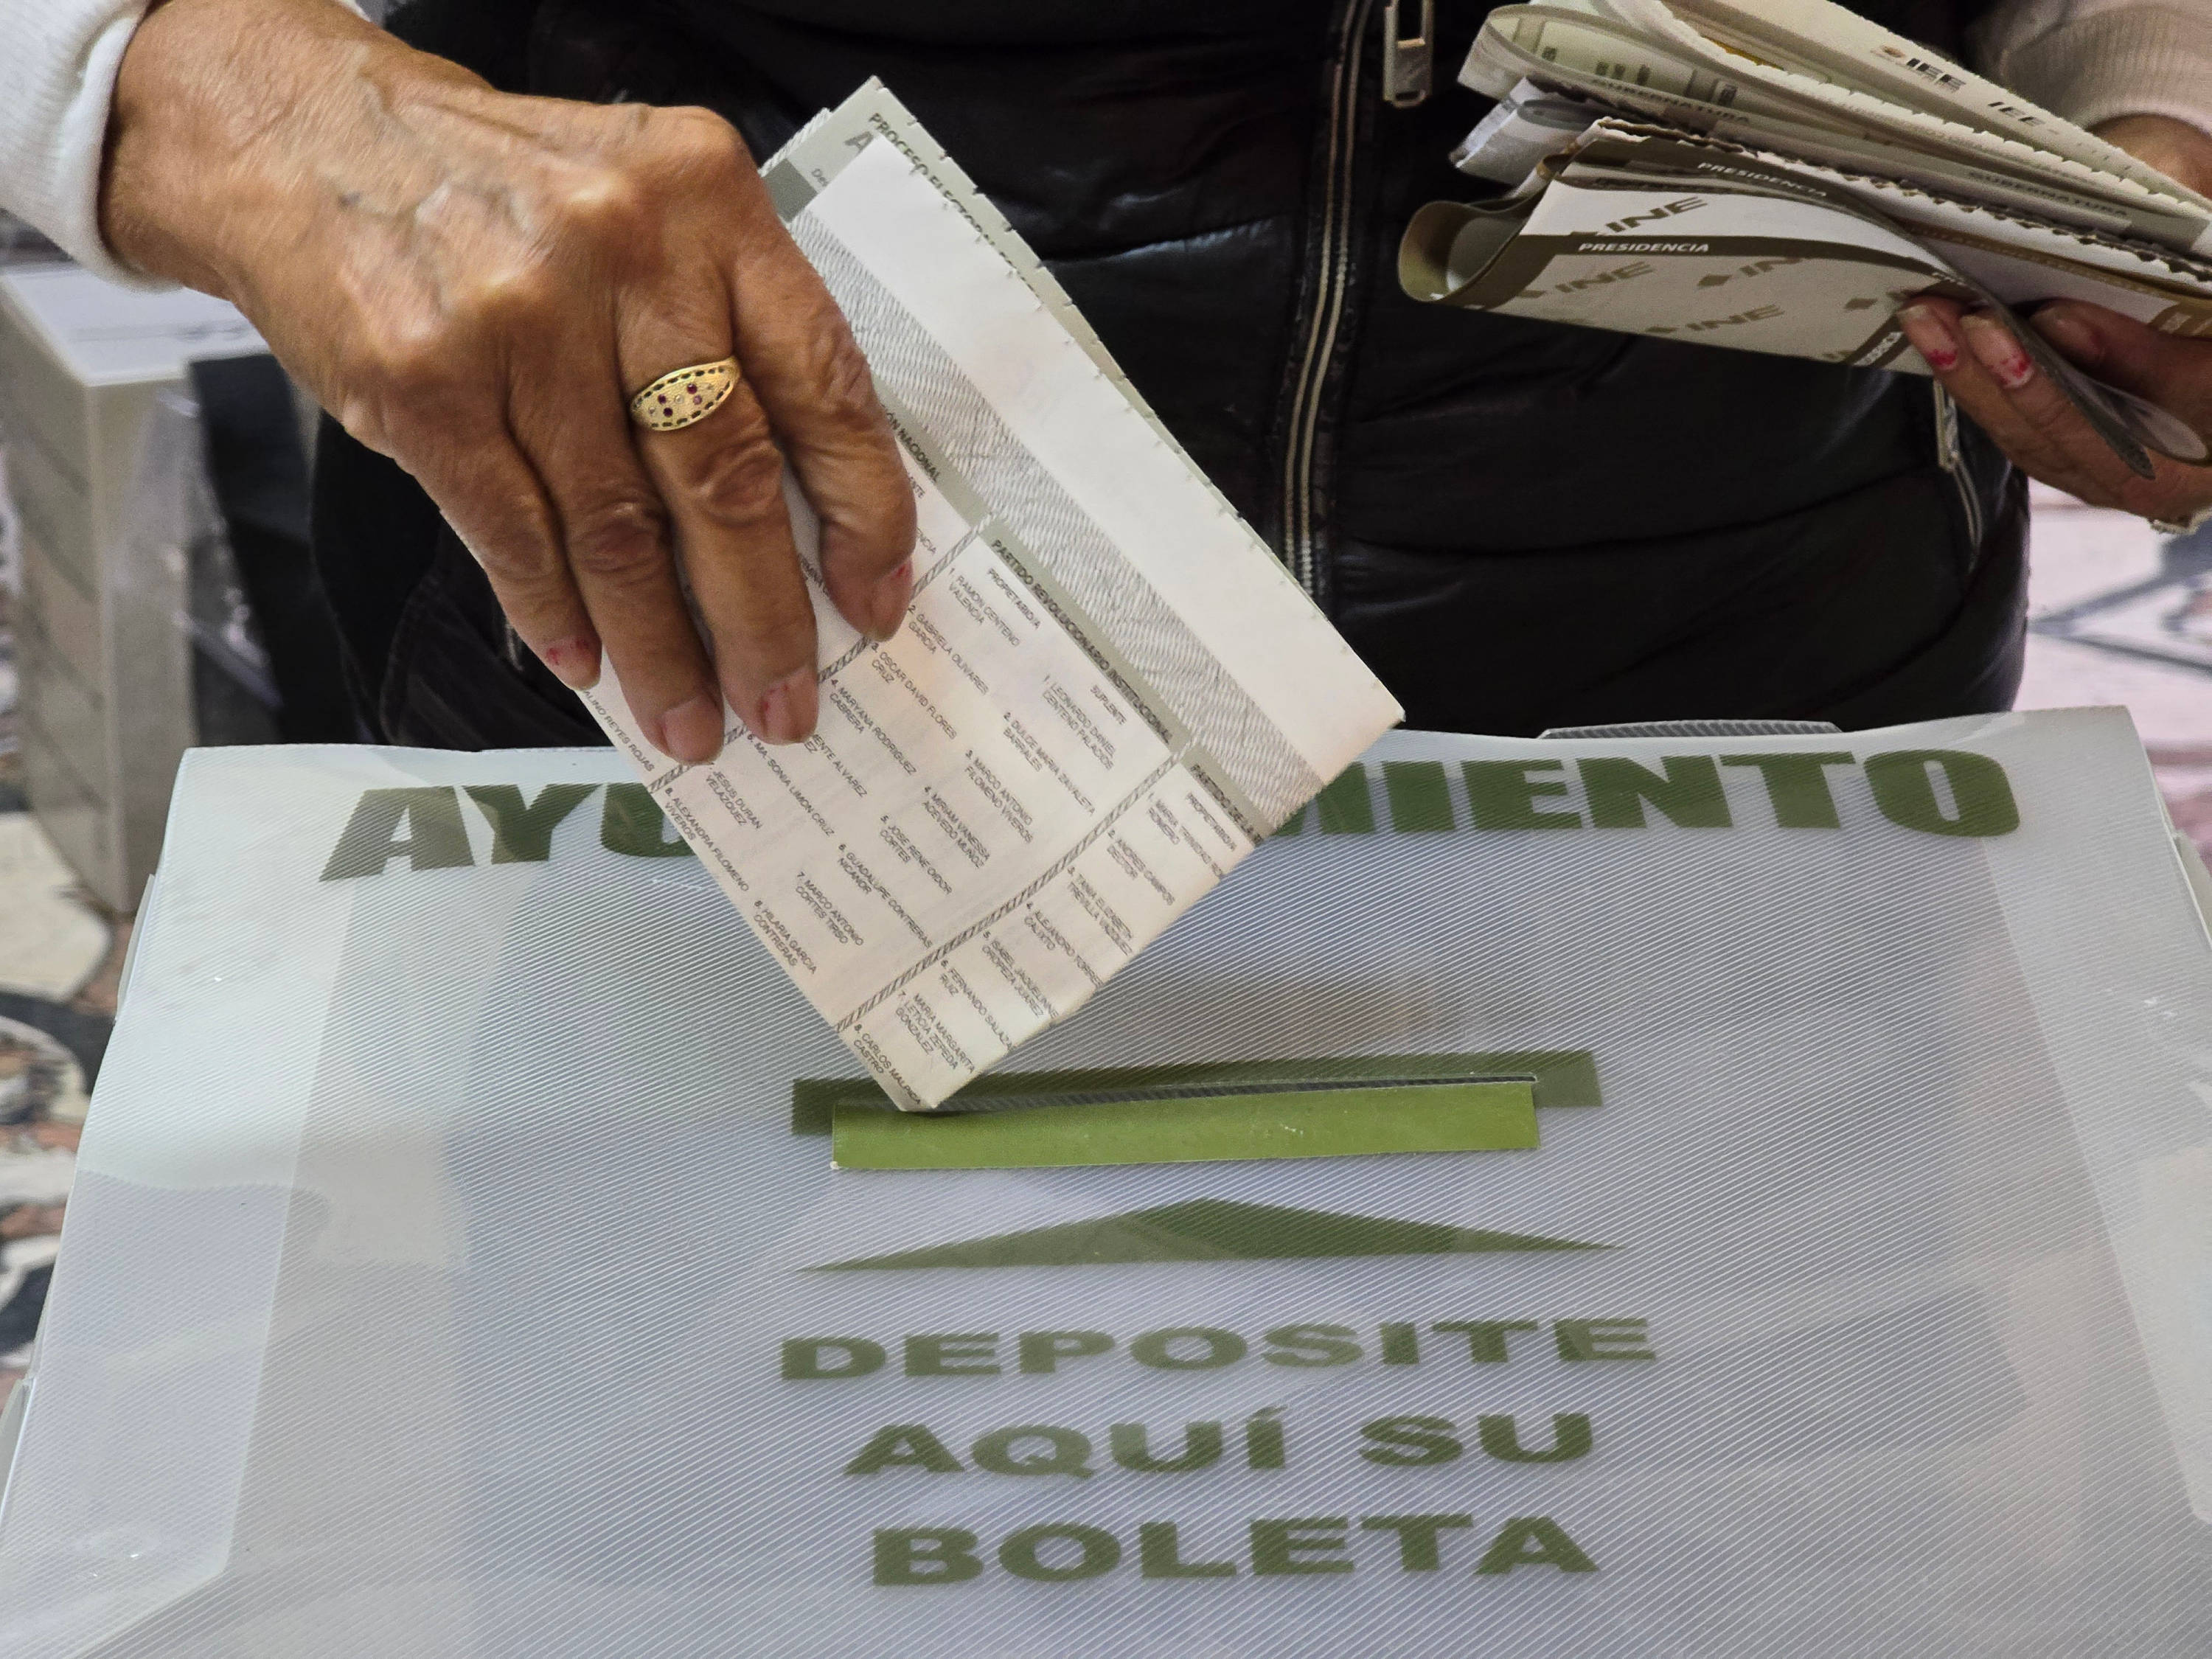 Este domingo salieron a votar 59.3 millones de mexicanos